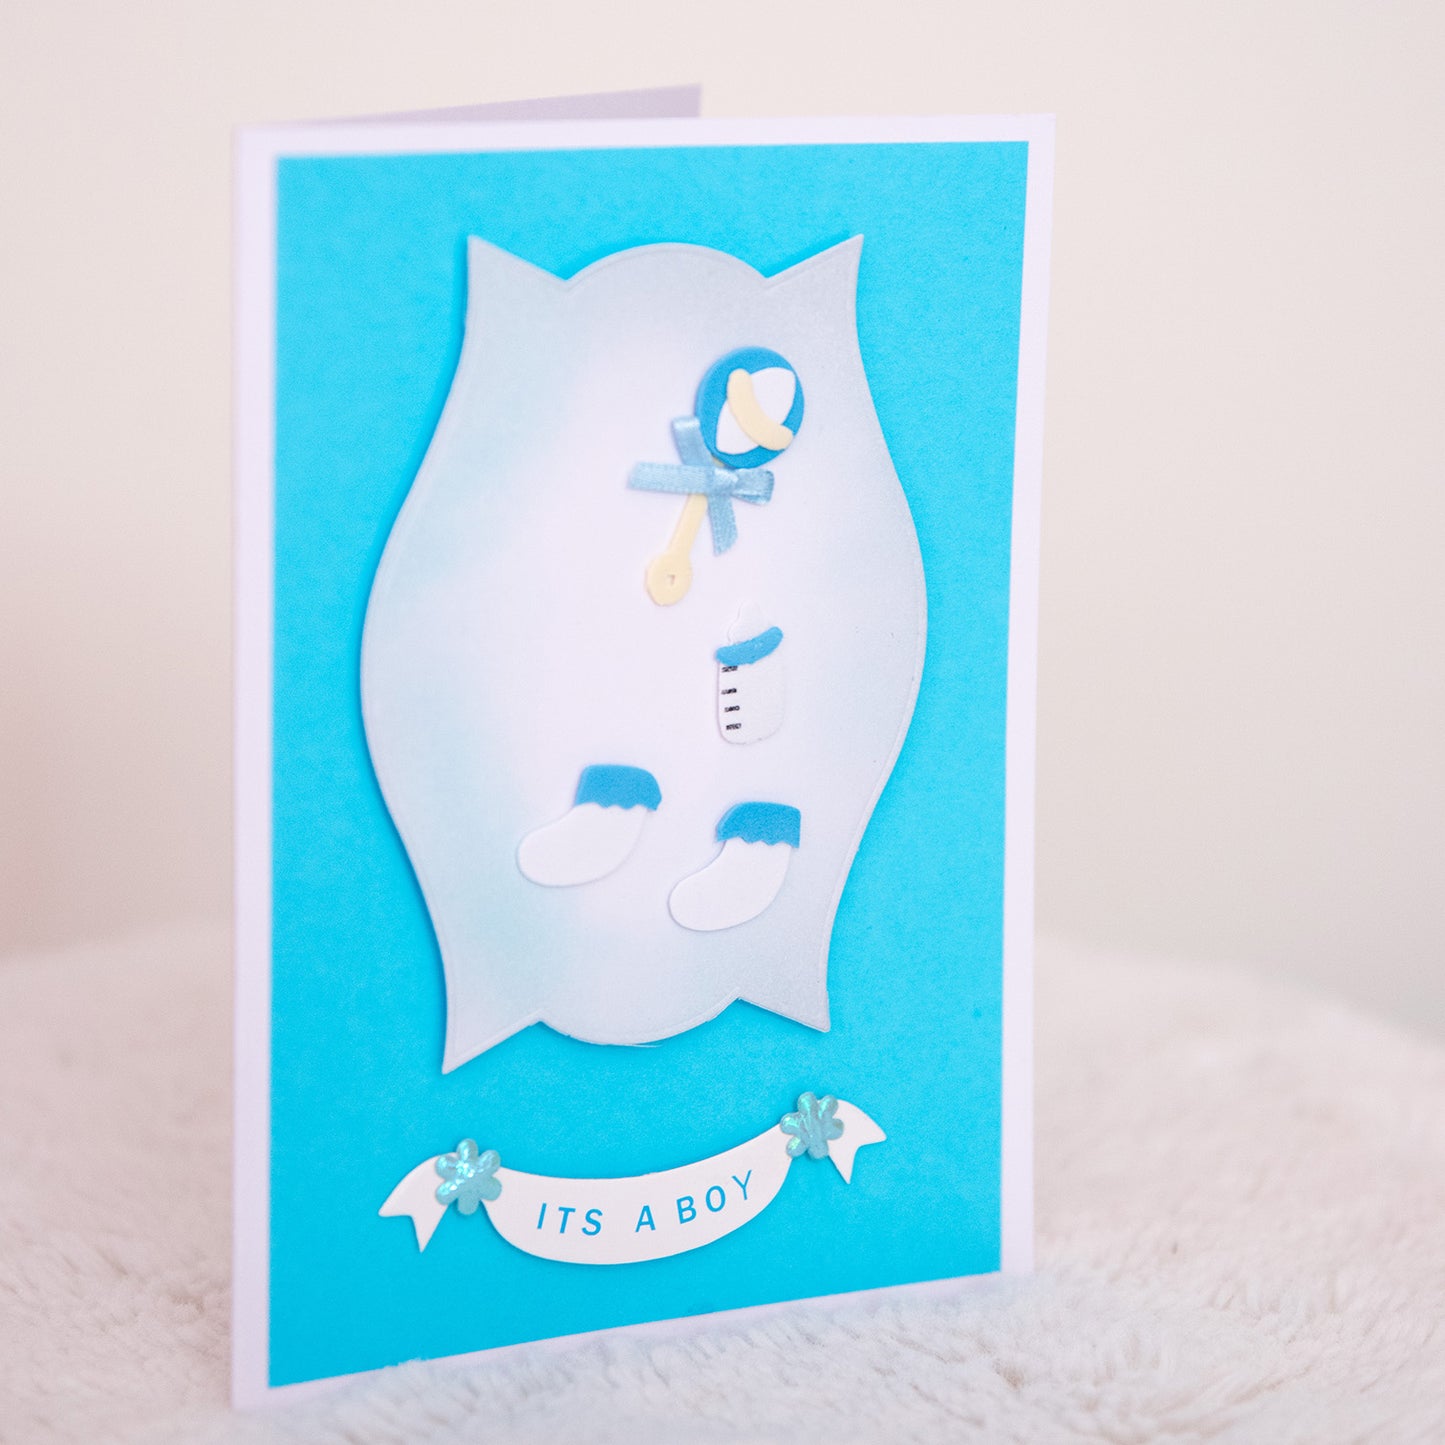 "It's a Boy” greeting card